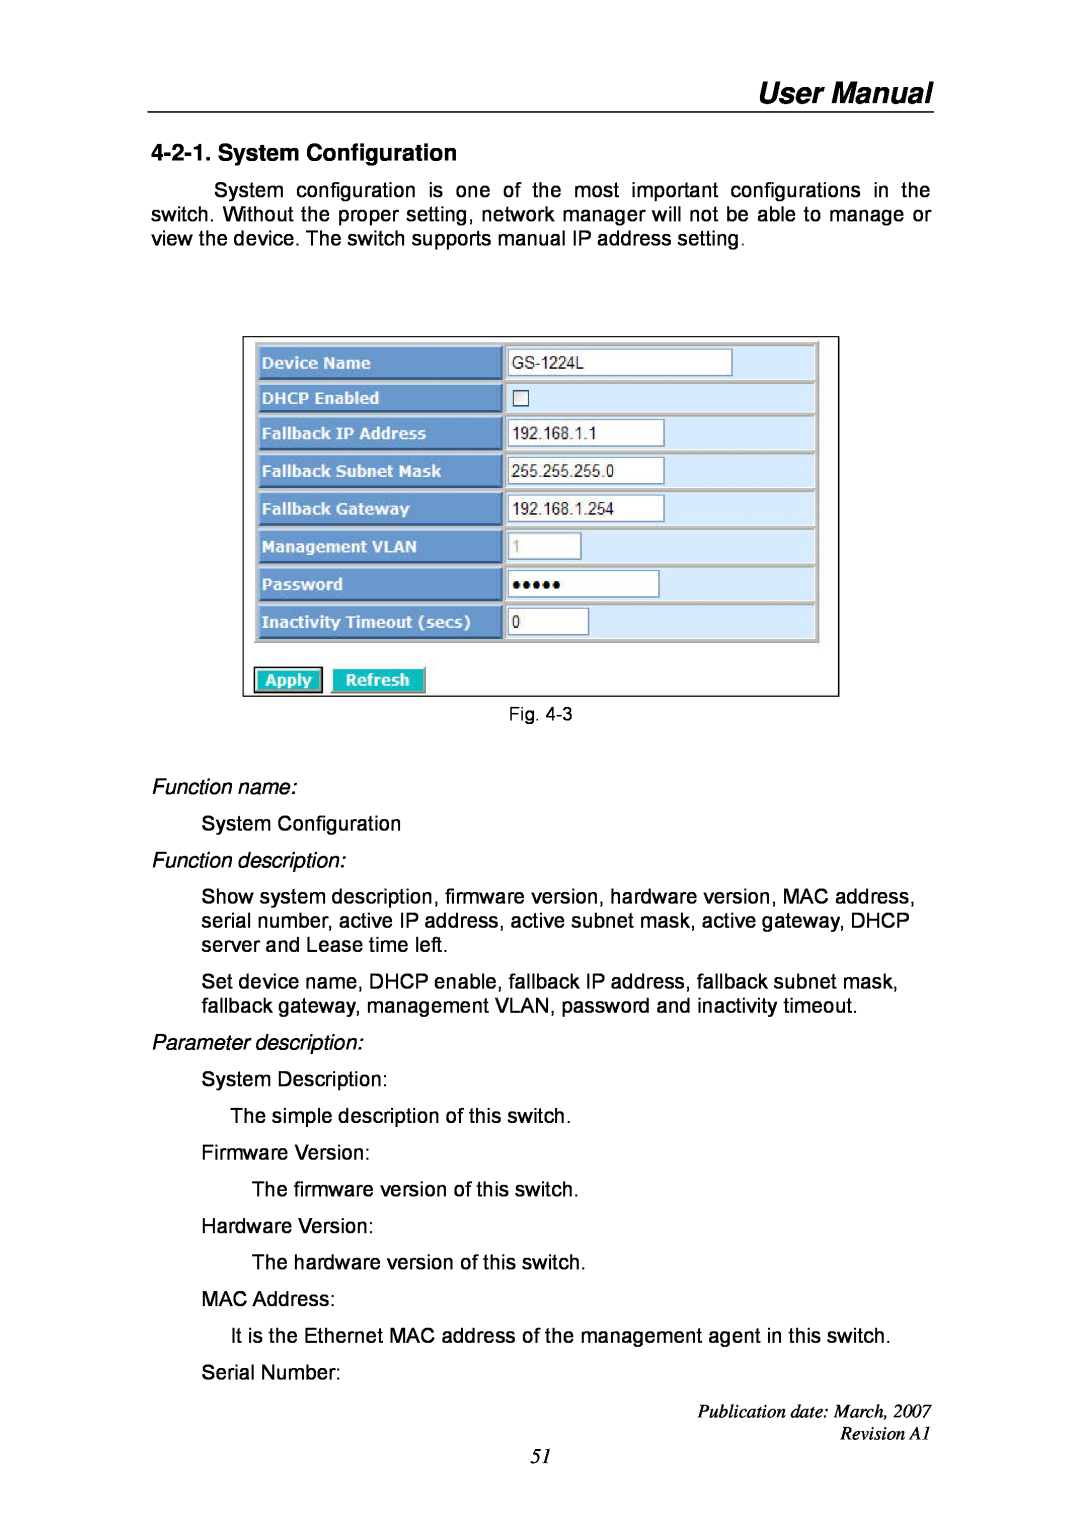 Ruby Tech GS-1224L manual System Configuration, Function name, Function description, Parameter description, User Manual 